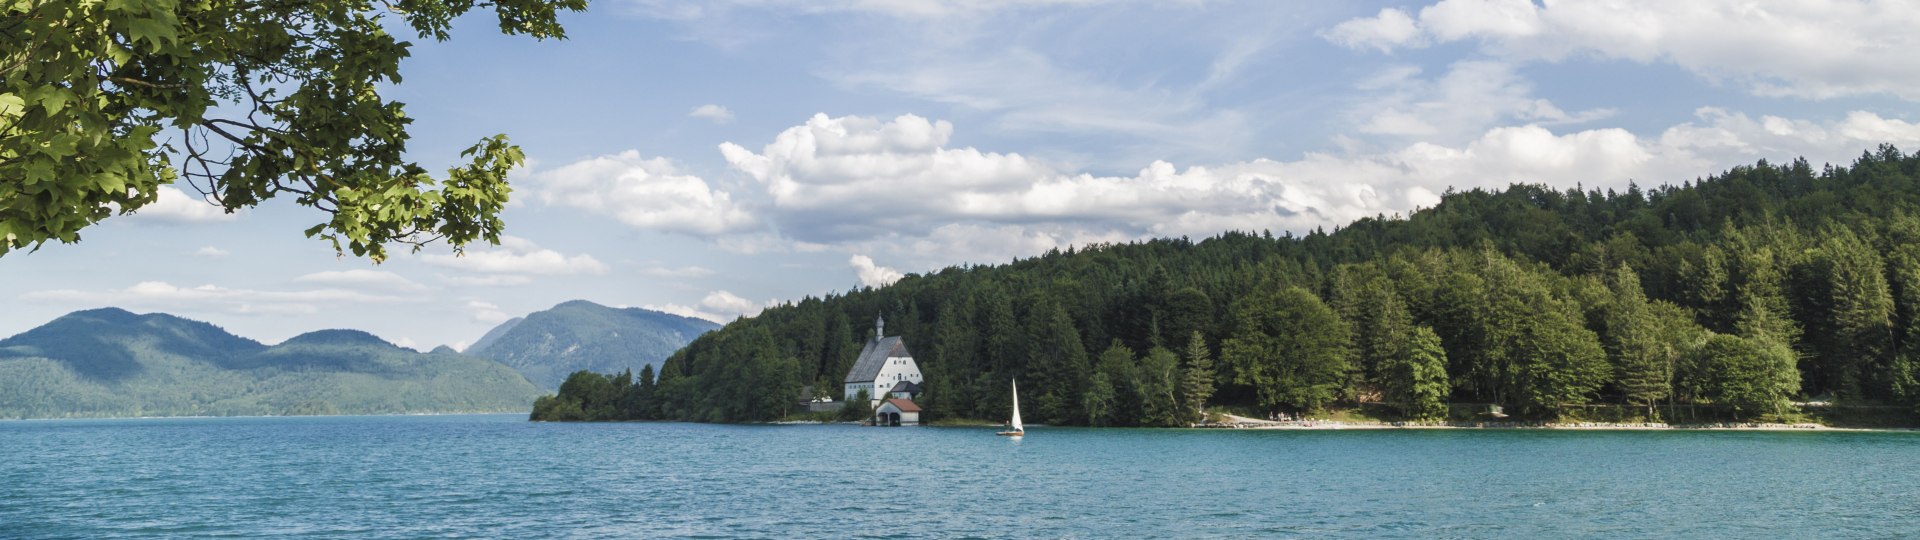 Walchensee mit Blick auf das Klösterl, © Tourist Information Kochel a. See